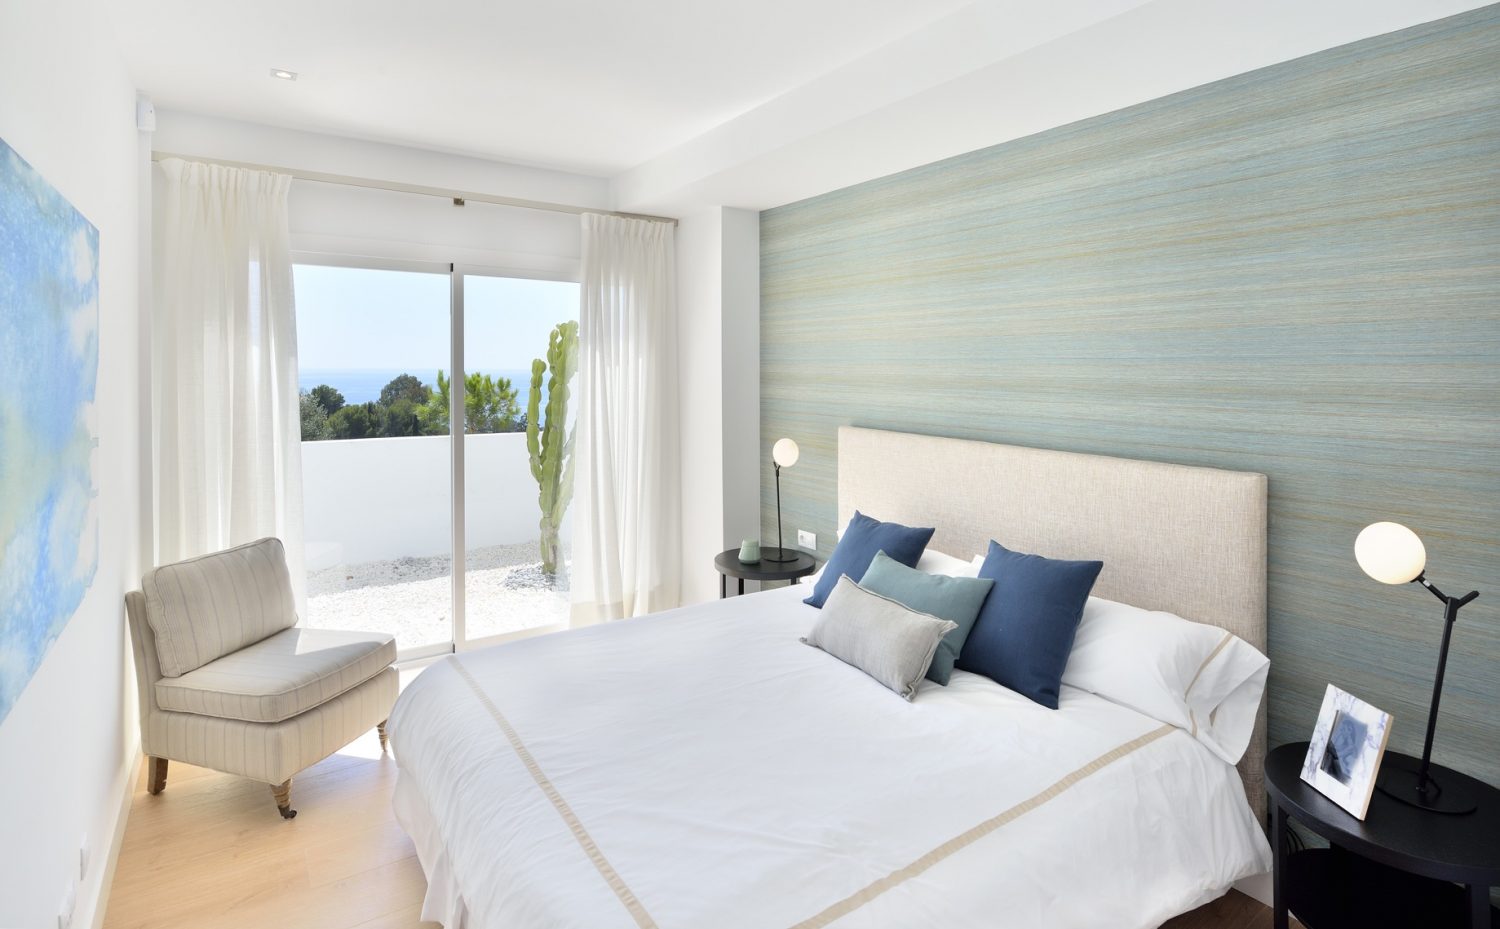 Alle villa's bieden een prachtig panoramisch uitzicht op de Middellandse Zee